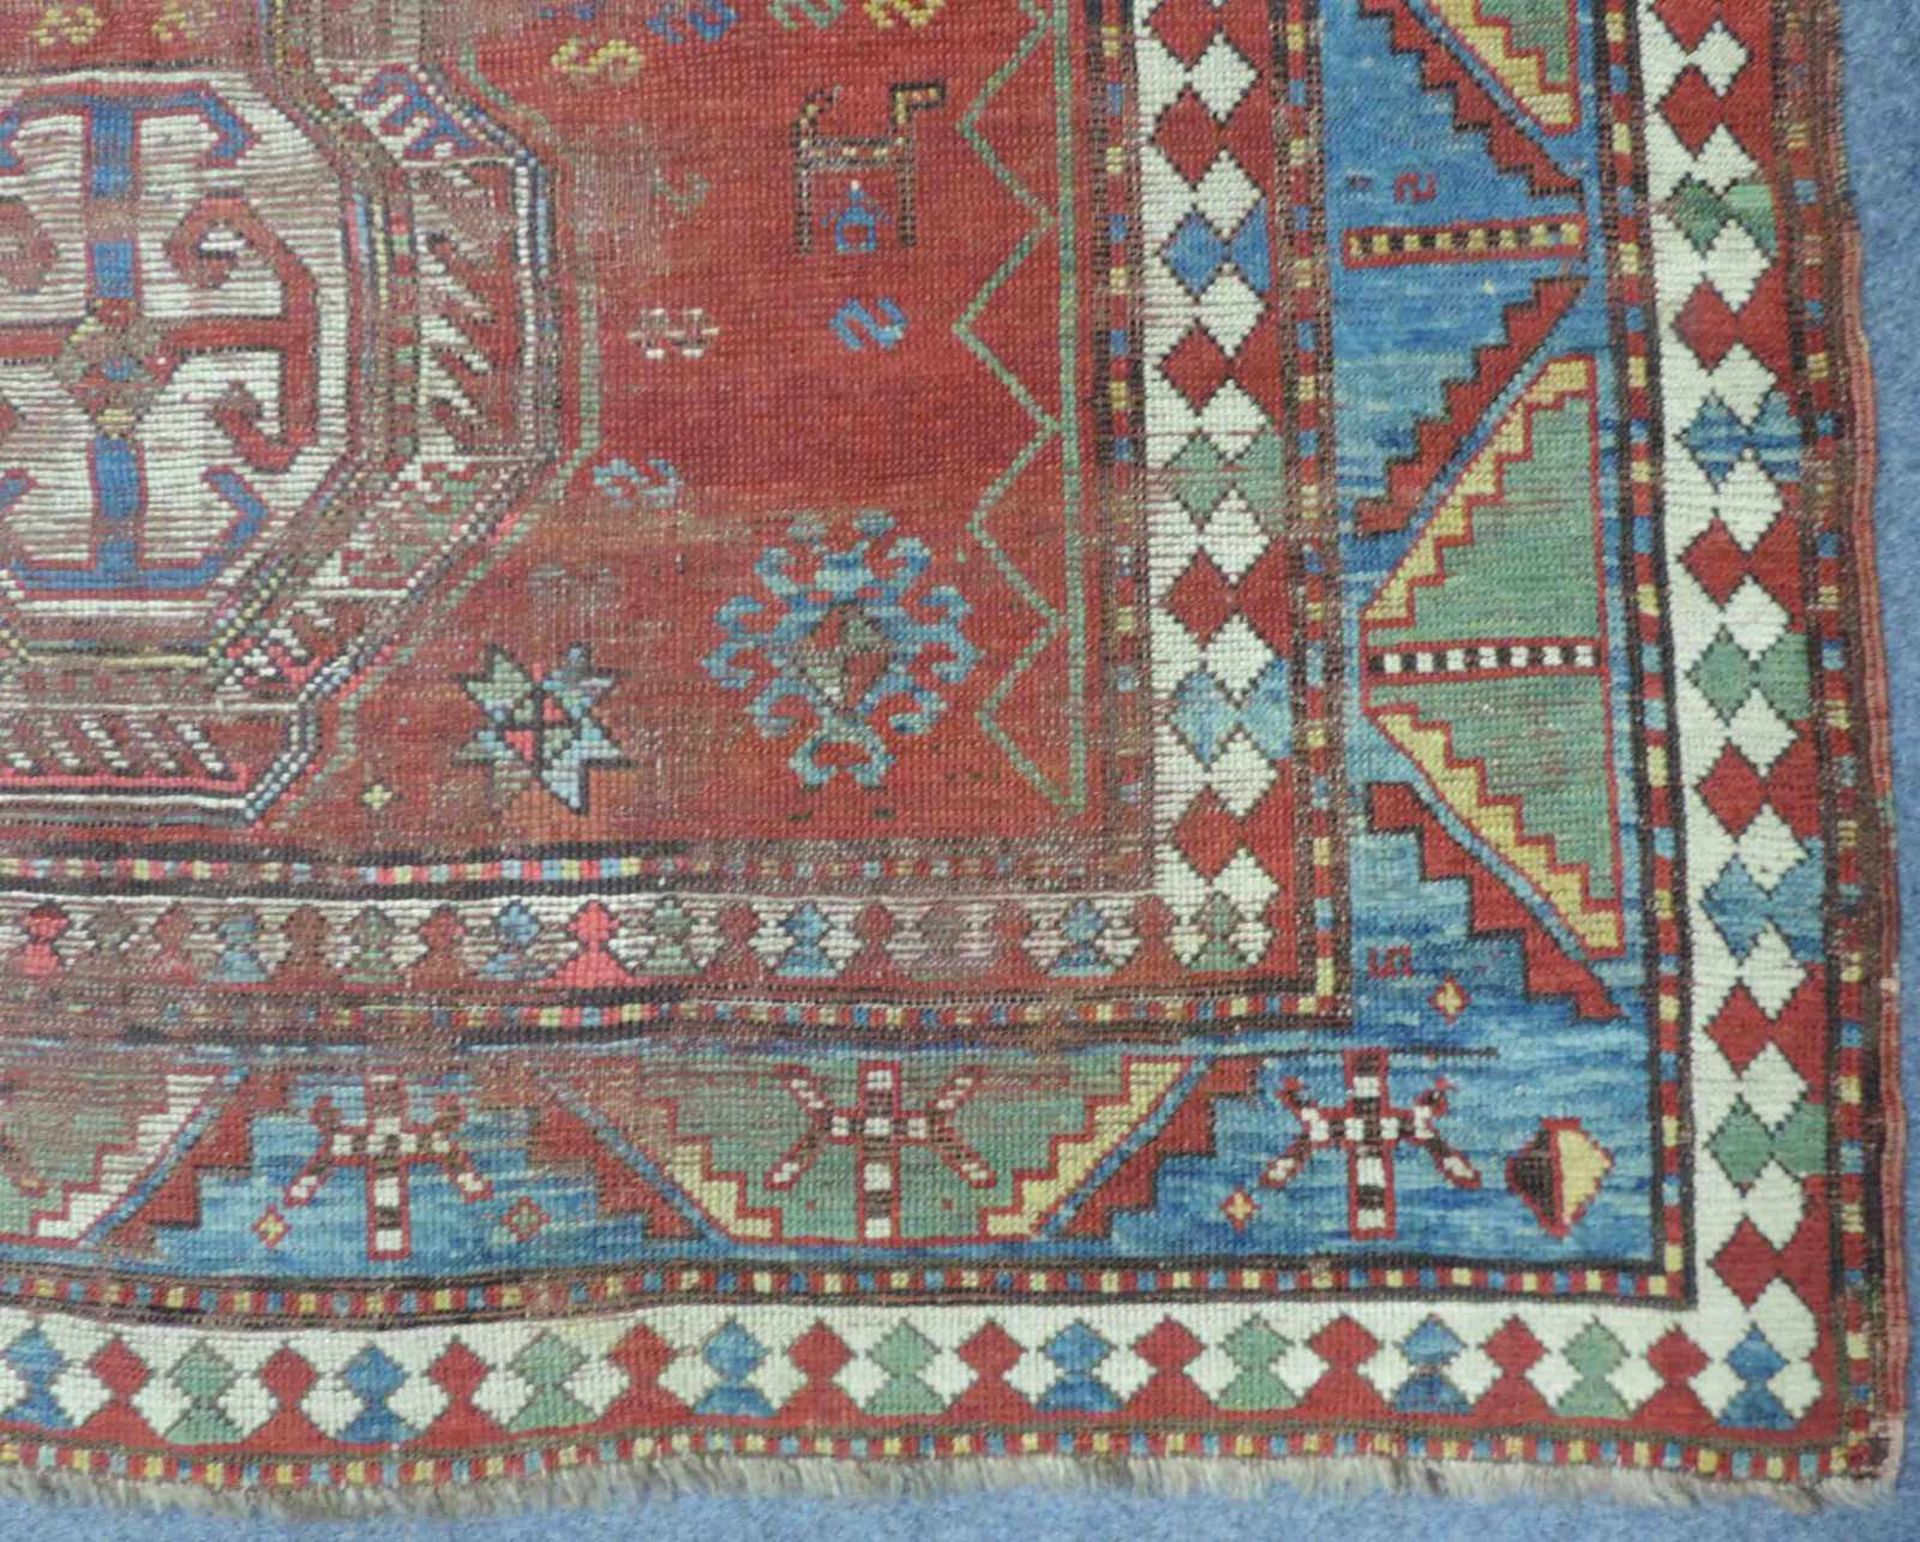 Kasak Dorfteppich, Kaukasus. Antik. Ende 19. Jahrhundert. 245 cm x 170 cm. Handgeknüpft. Wolle auf - Bild 4 aus 11